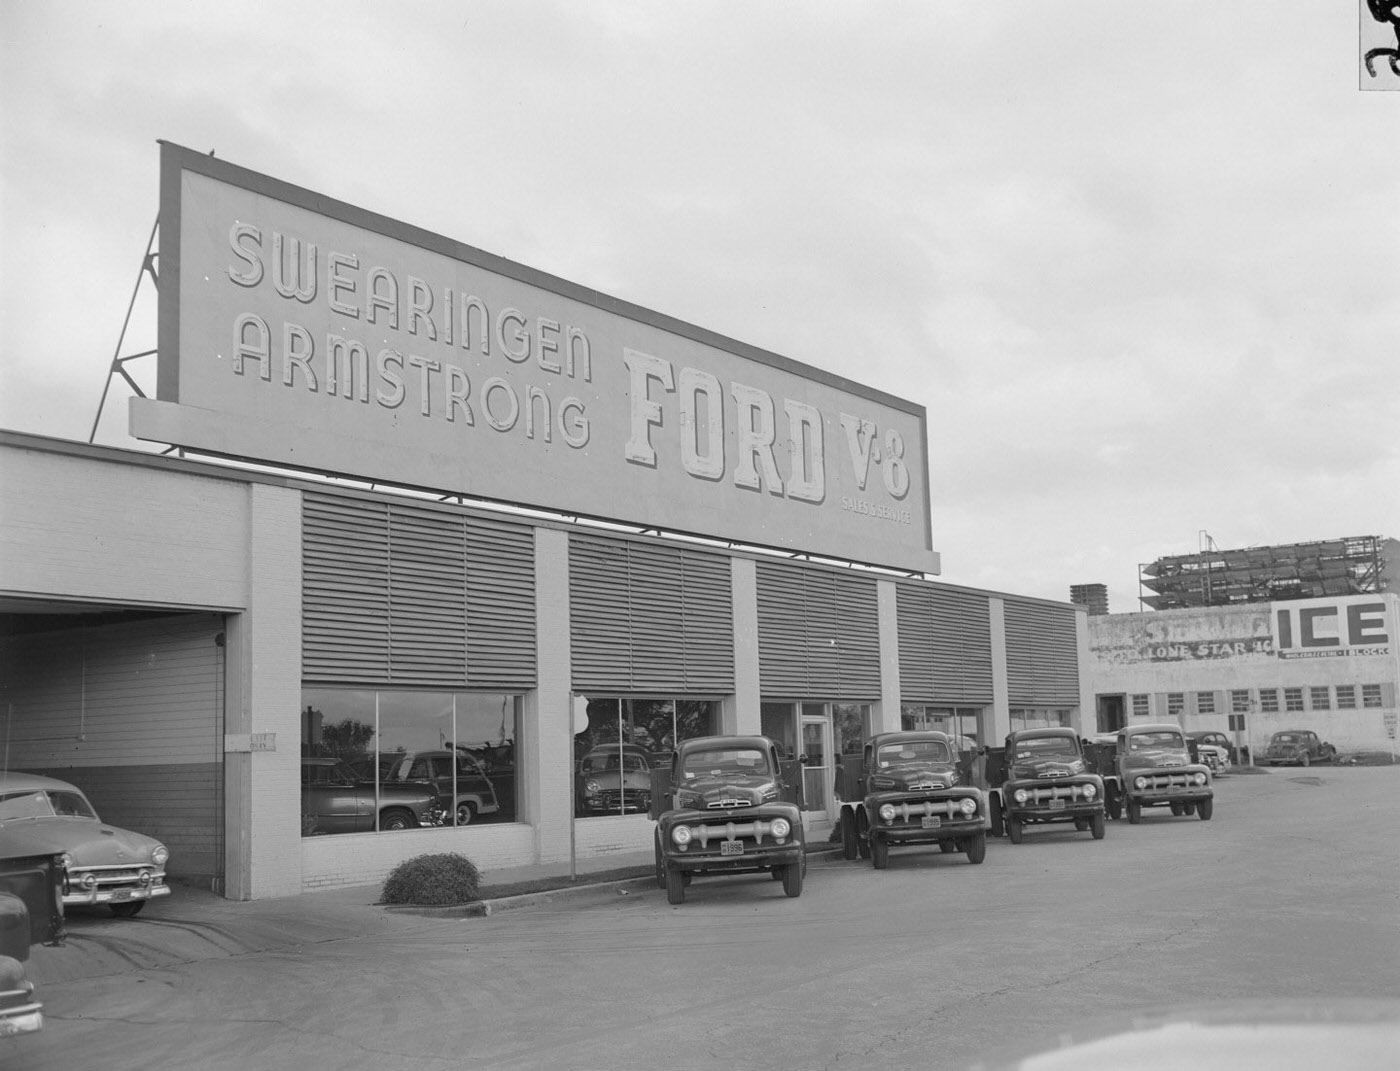 Swearingen Armstrong Ford V-8 Dealership, Austin, 1951.